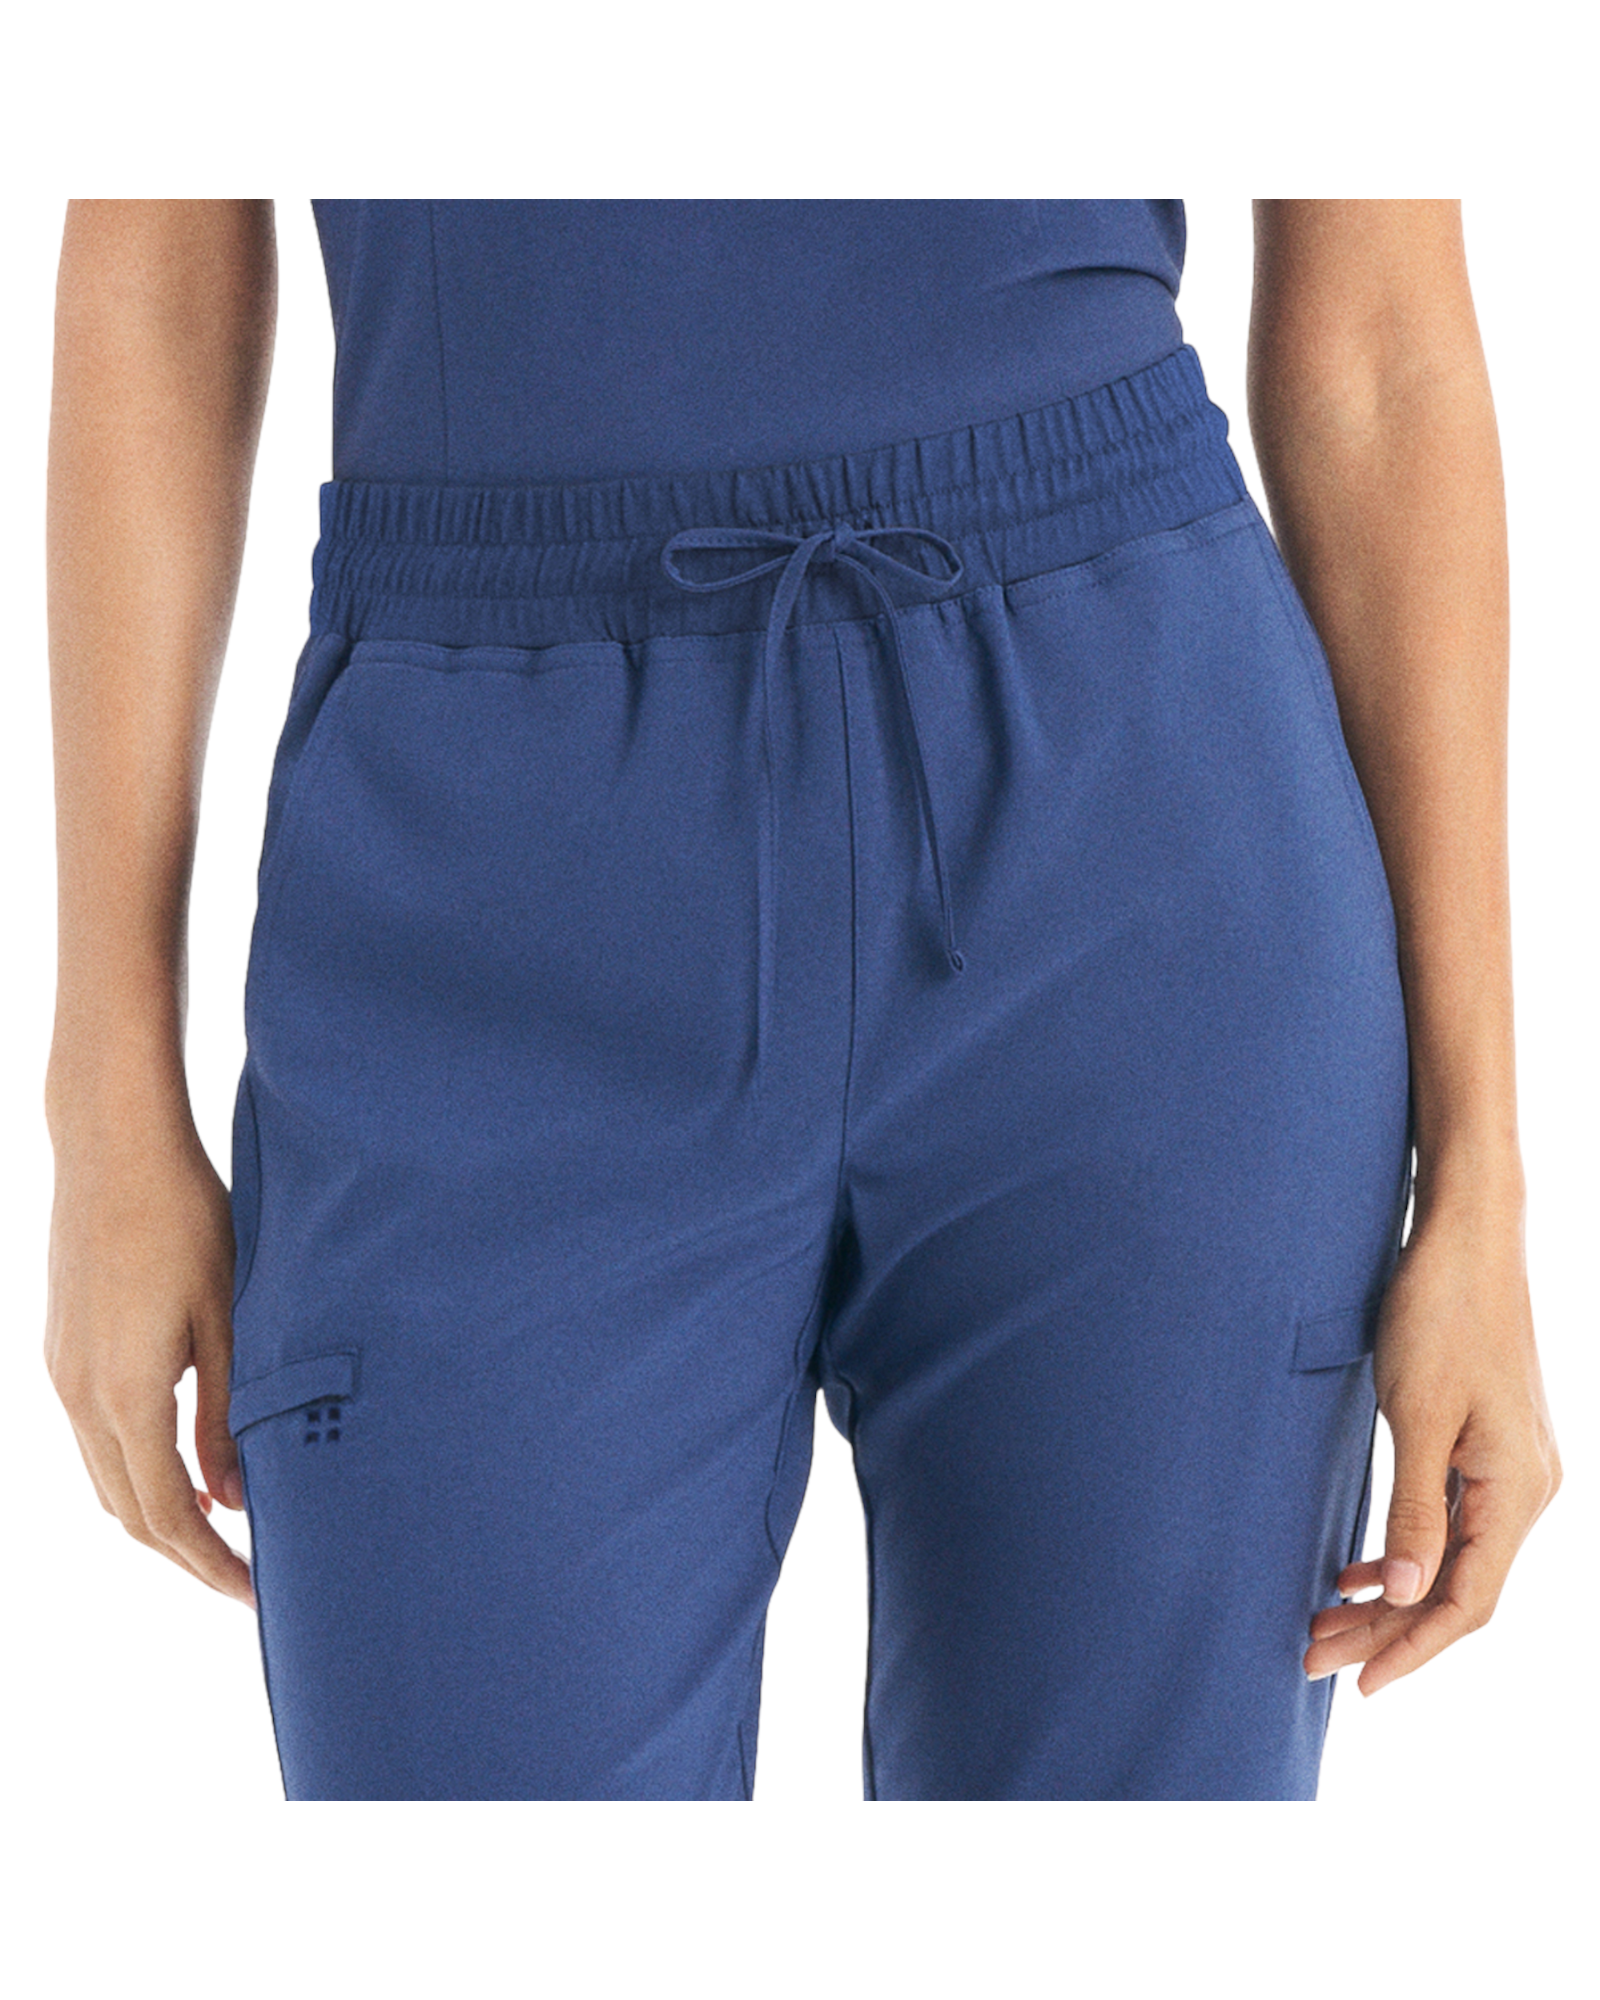 Pantalon de travail jogger hybride pour femme White Cross CRFT #WB415 vue taille avantcouleur Marine